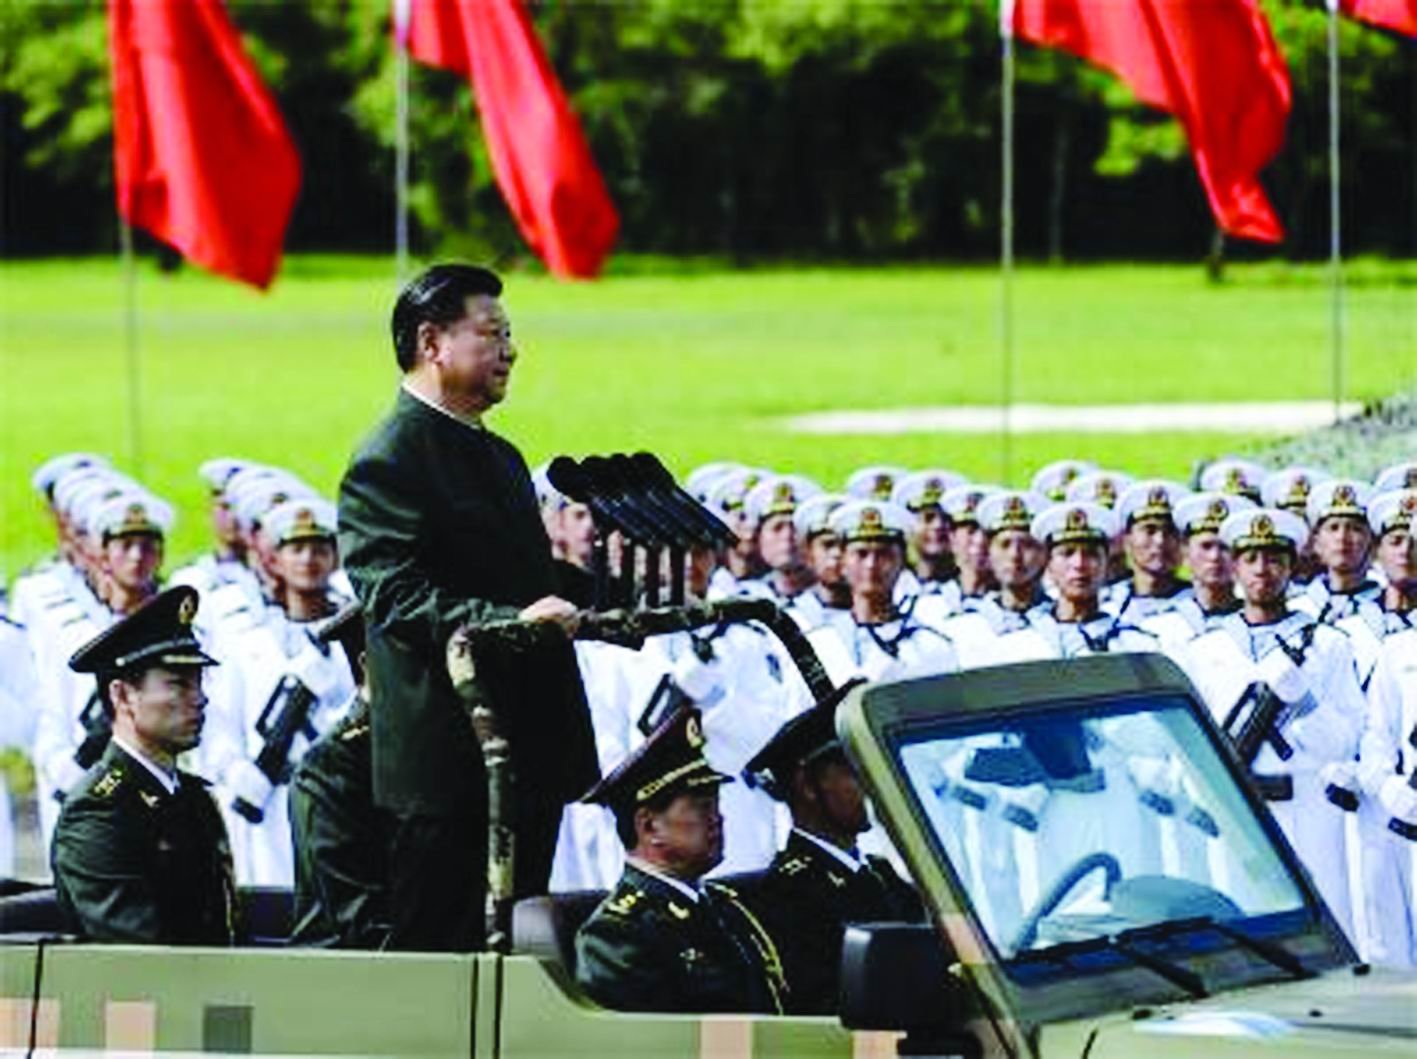 ડોકલામને કારણે બંને દેશો વચ્ચે ભીષણ યુદ્ધ થઇ શકે : ચીનની ચેતવણી